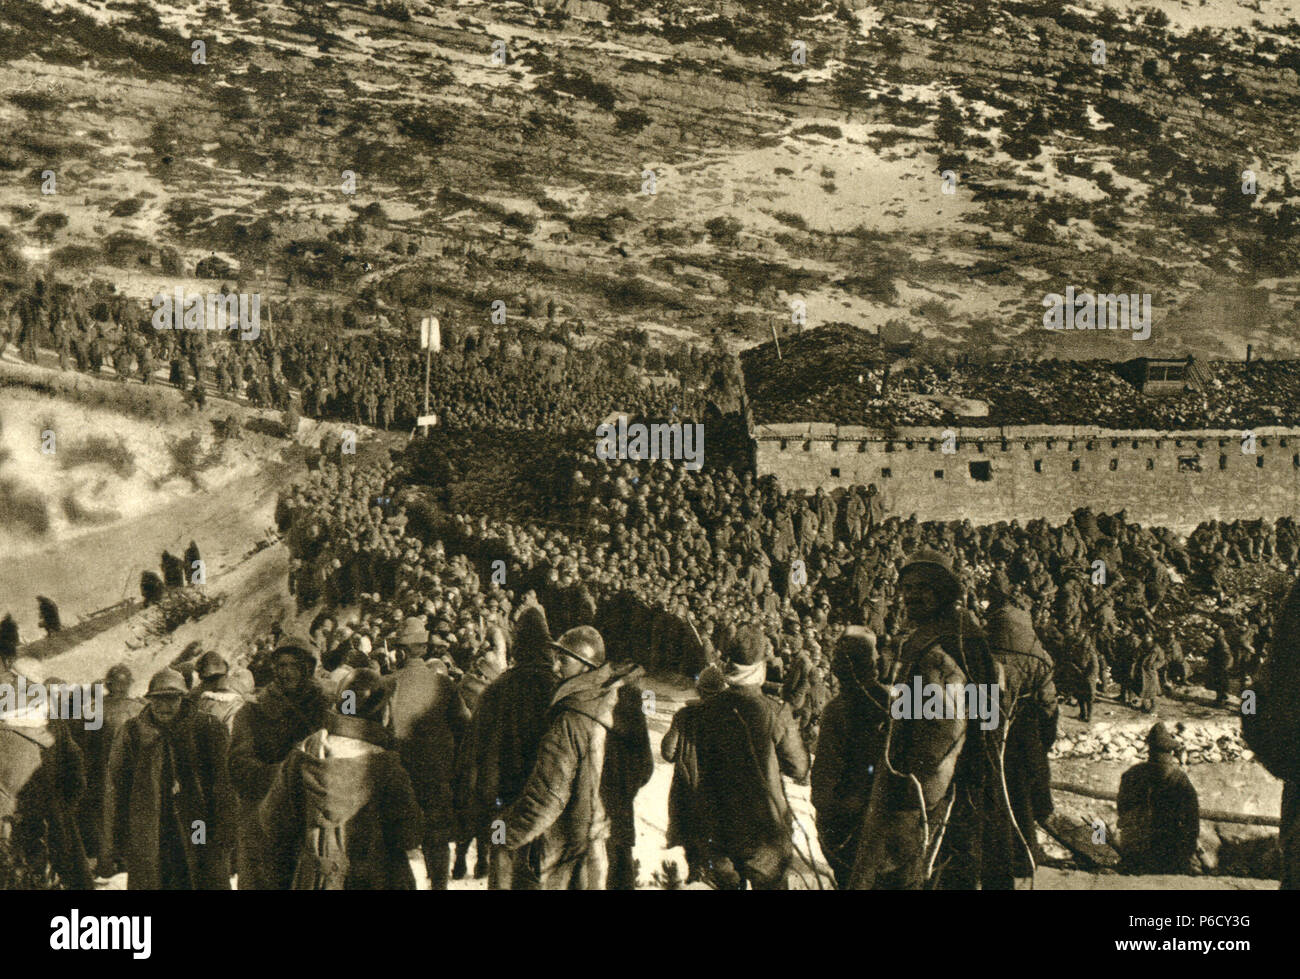 south tyrol, prisoners, Italian soldiers, ww1, wwi, world war one Stock Photo